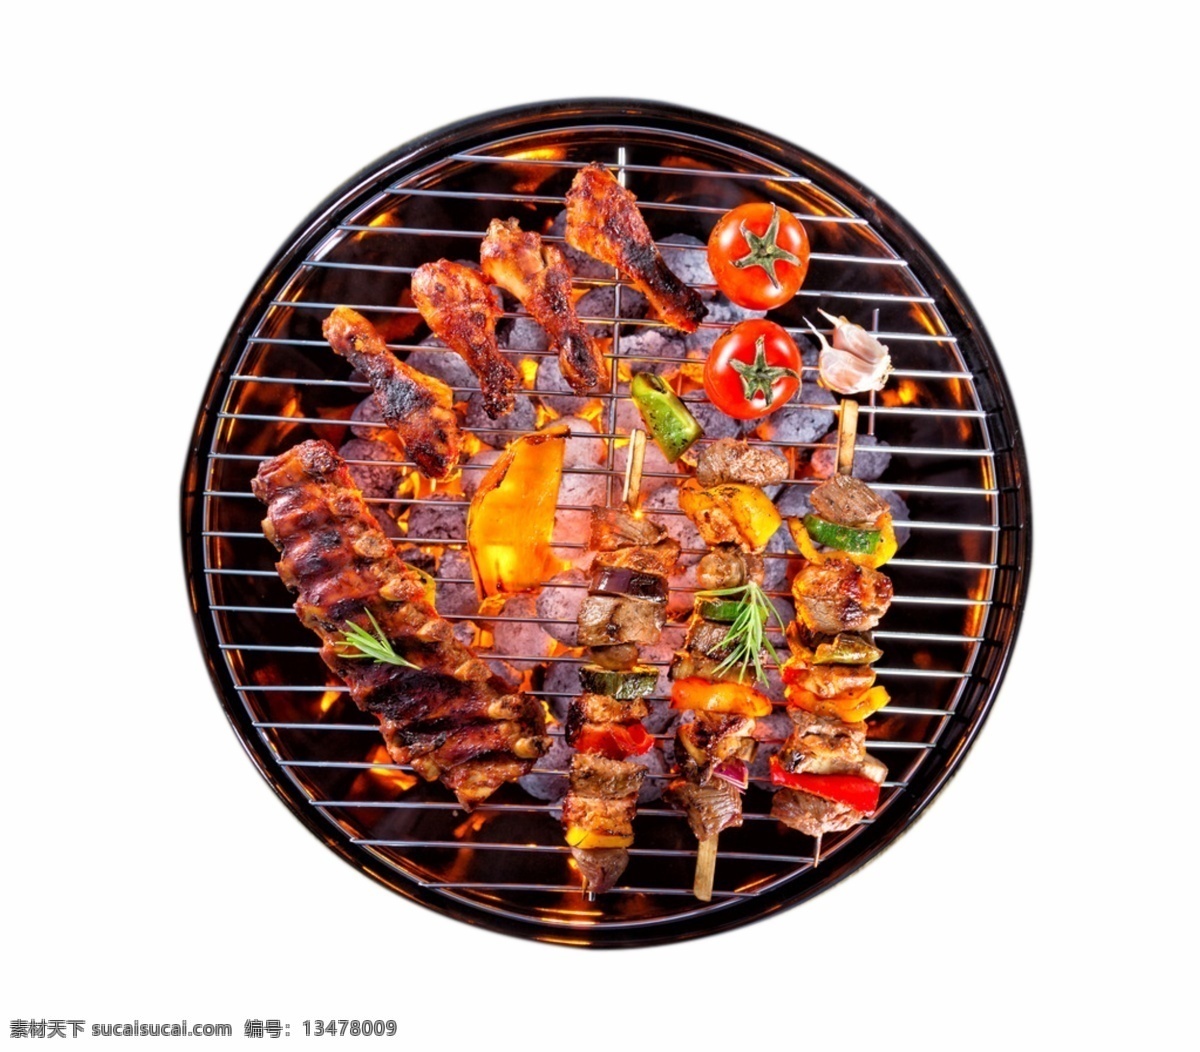 煎 烤 油炸 烧烤 烤肉 俯视图 美味 火炉 蔬菜 鸡腿 烘烤 煎烤 食物 水果